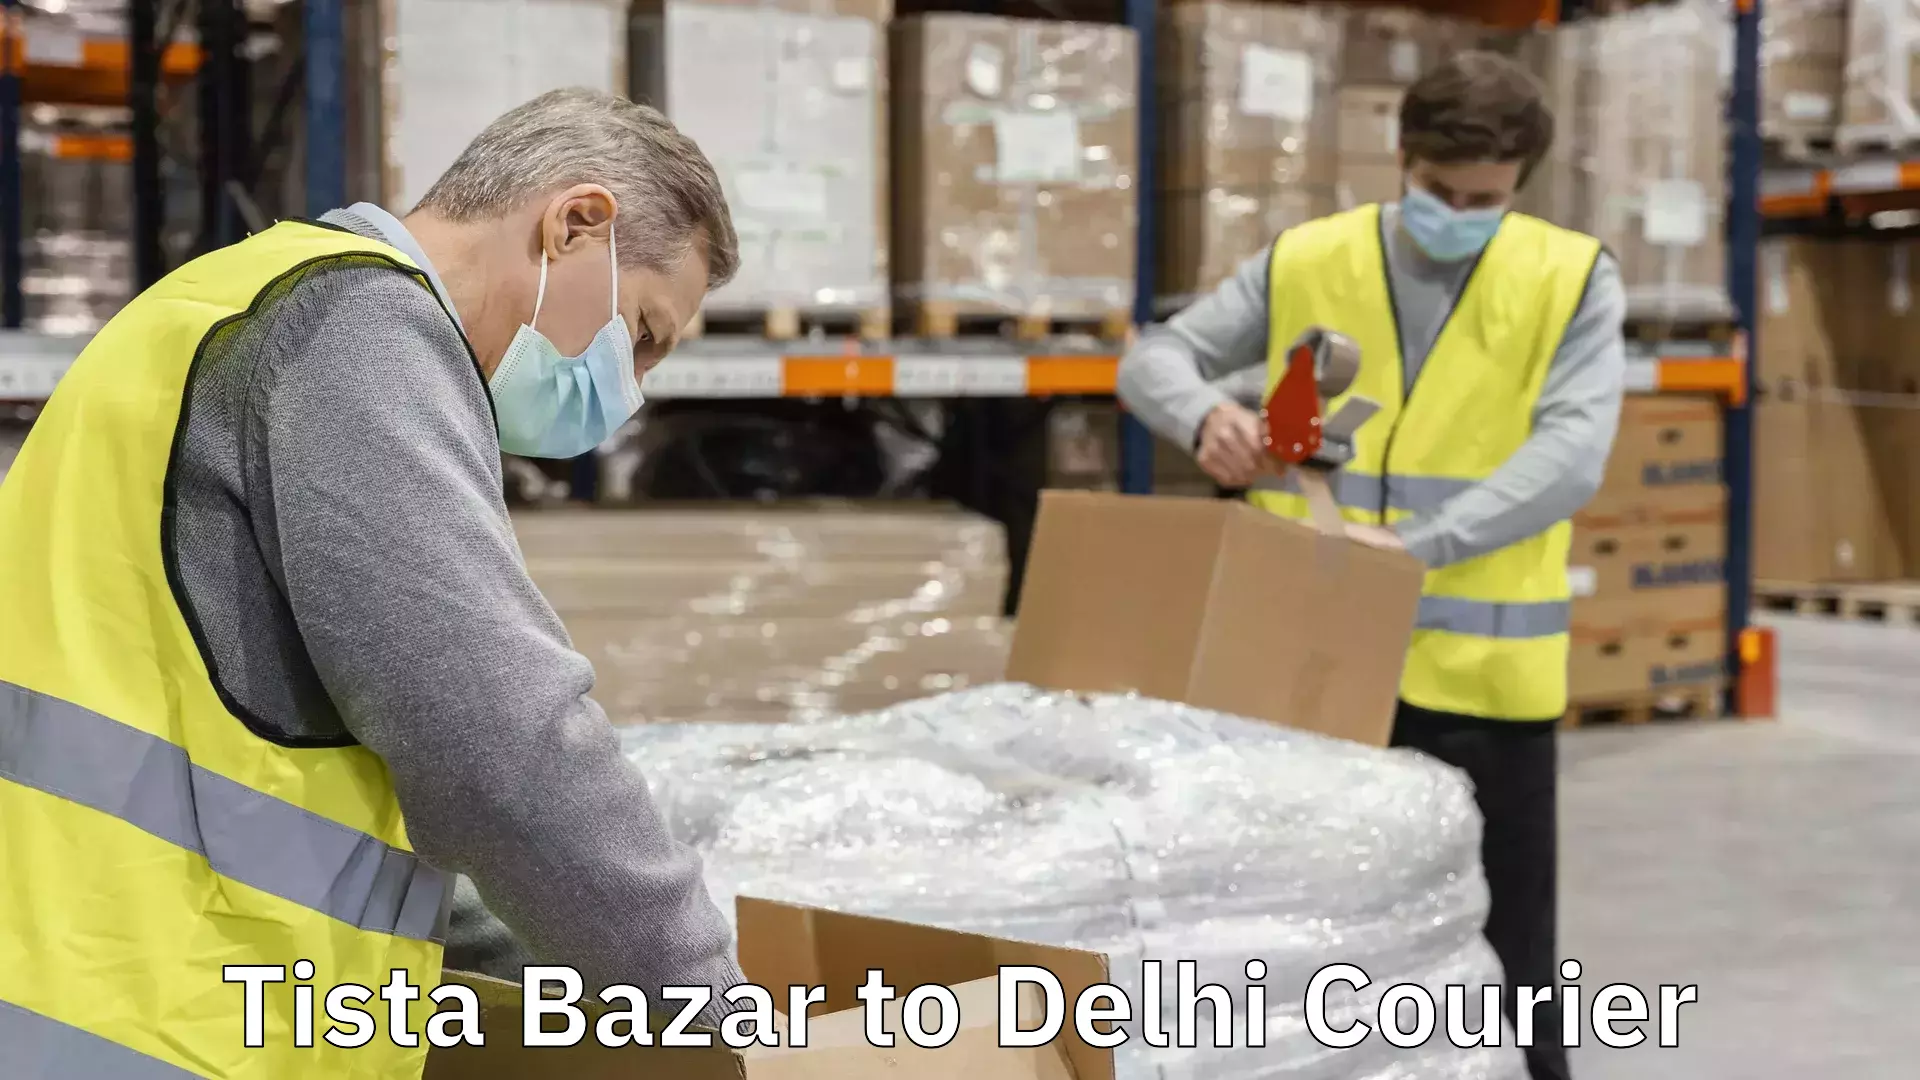 Professional courier handling Tista Bazar to Delhi